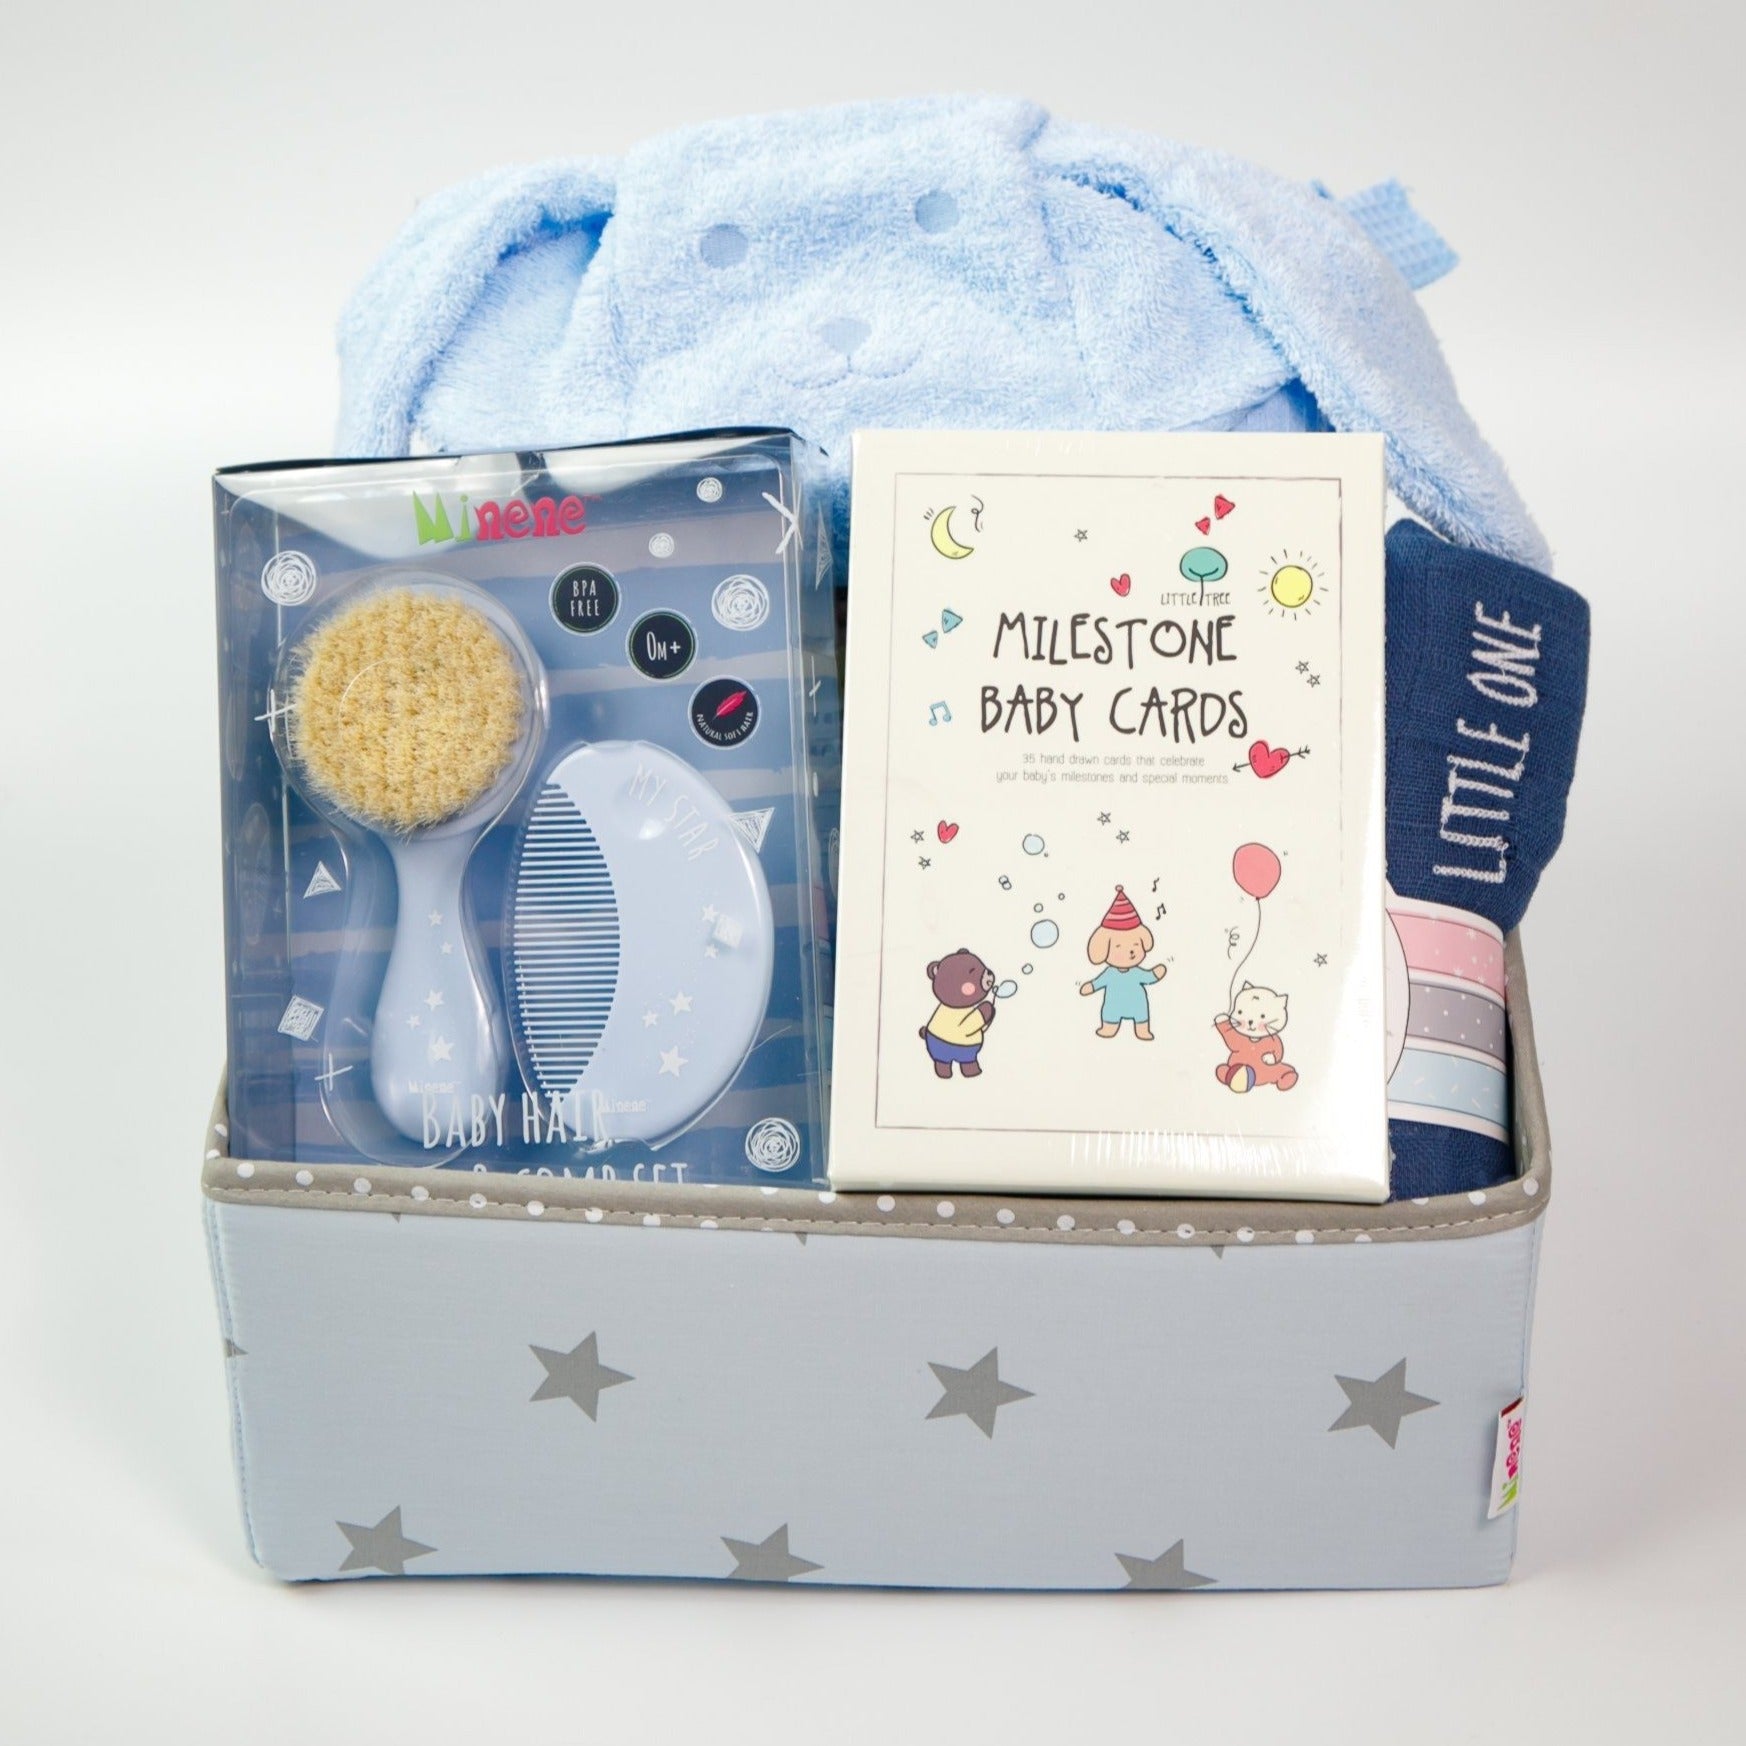 Fun Bath Time Gift Box - Blue